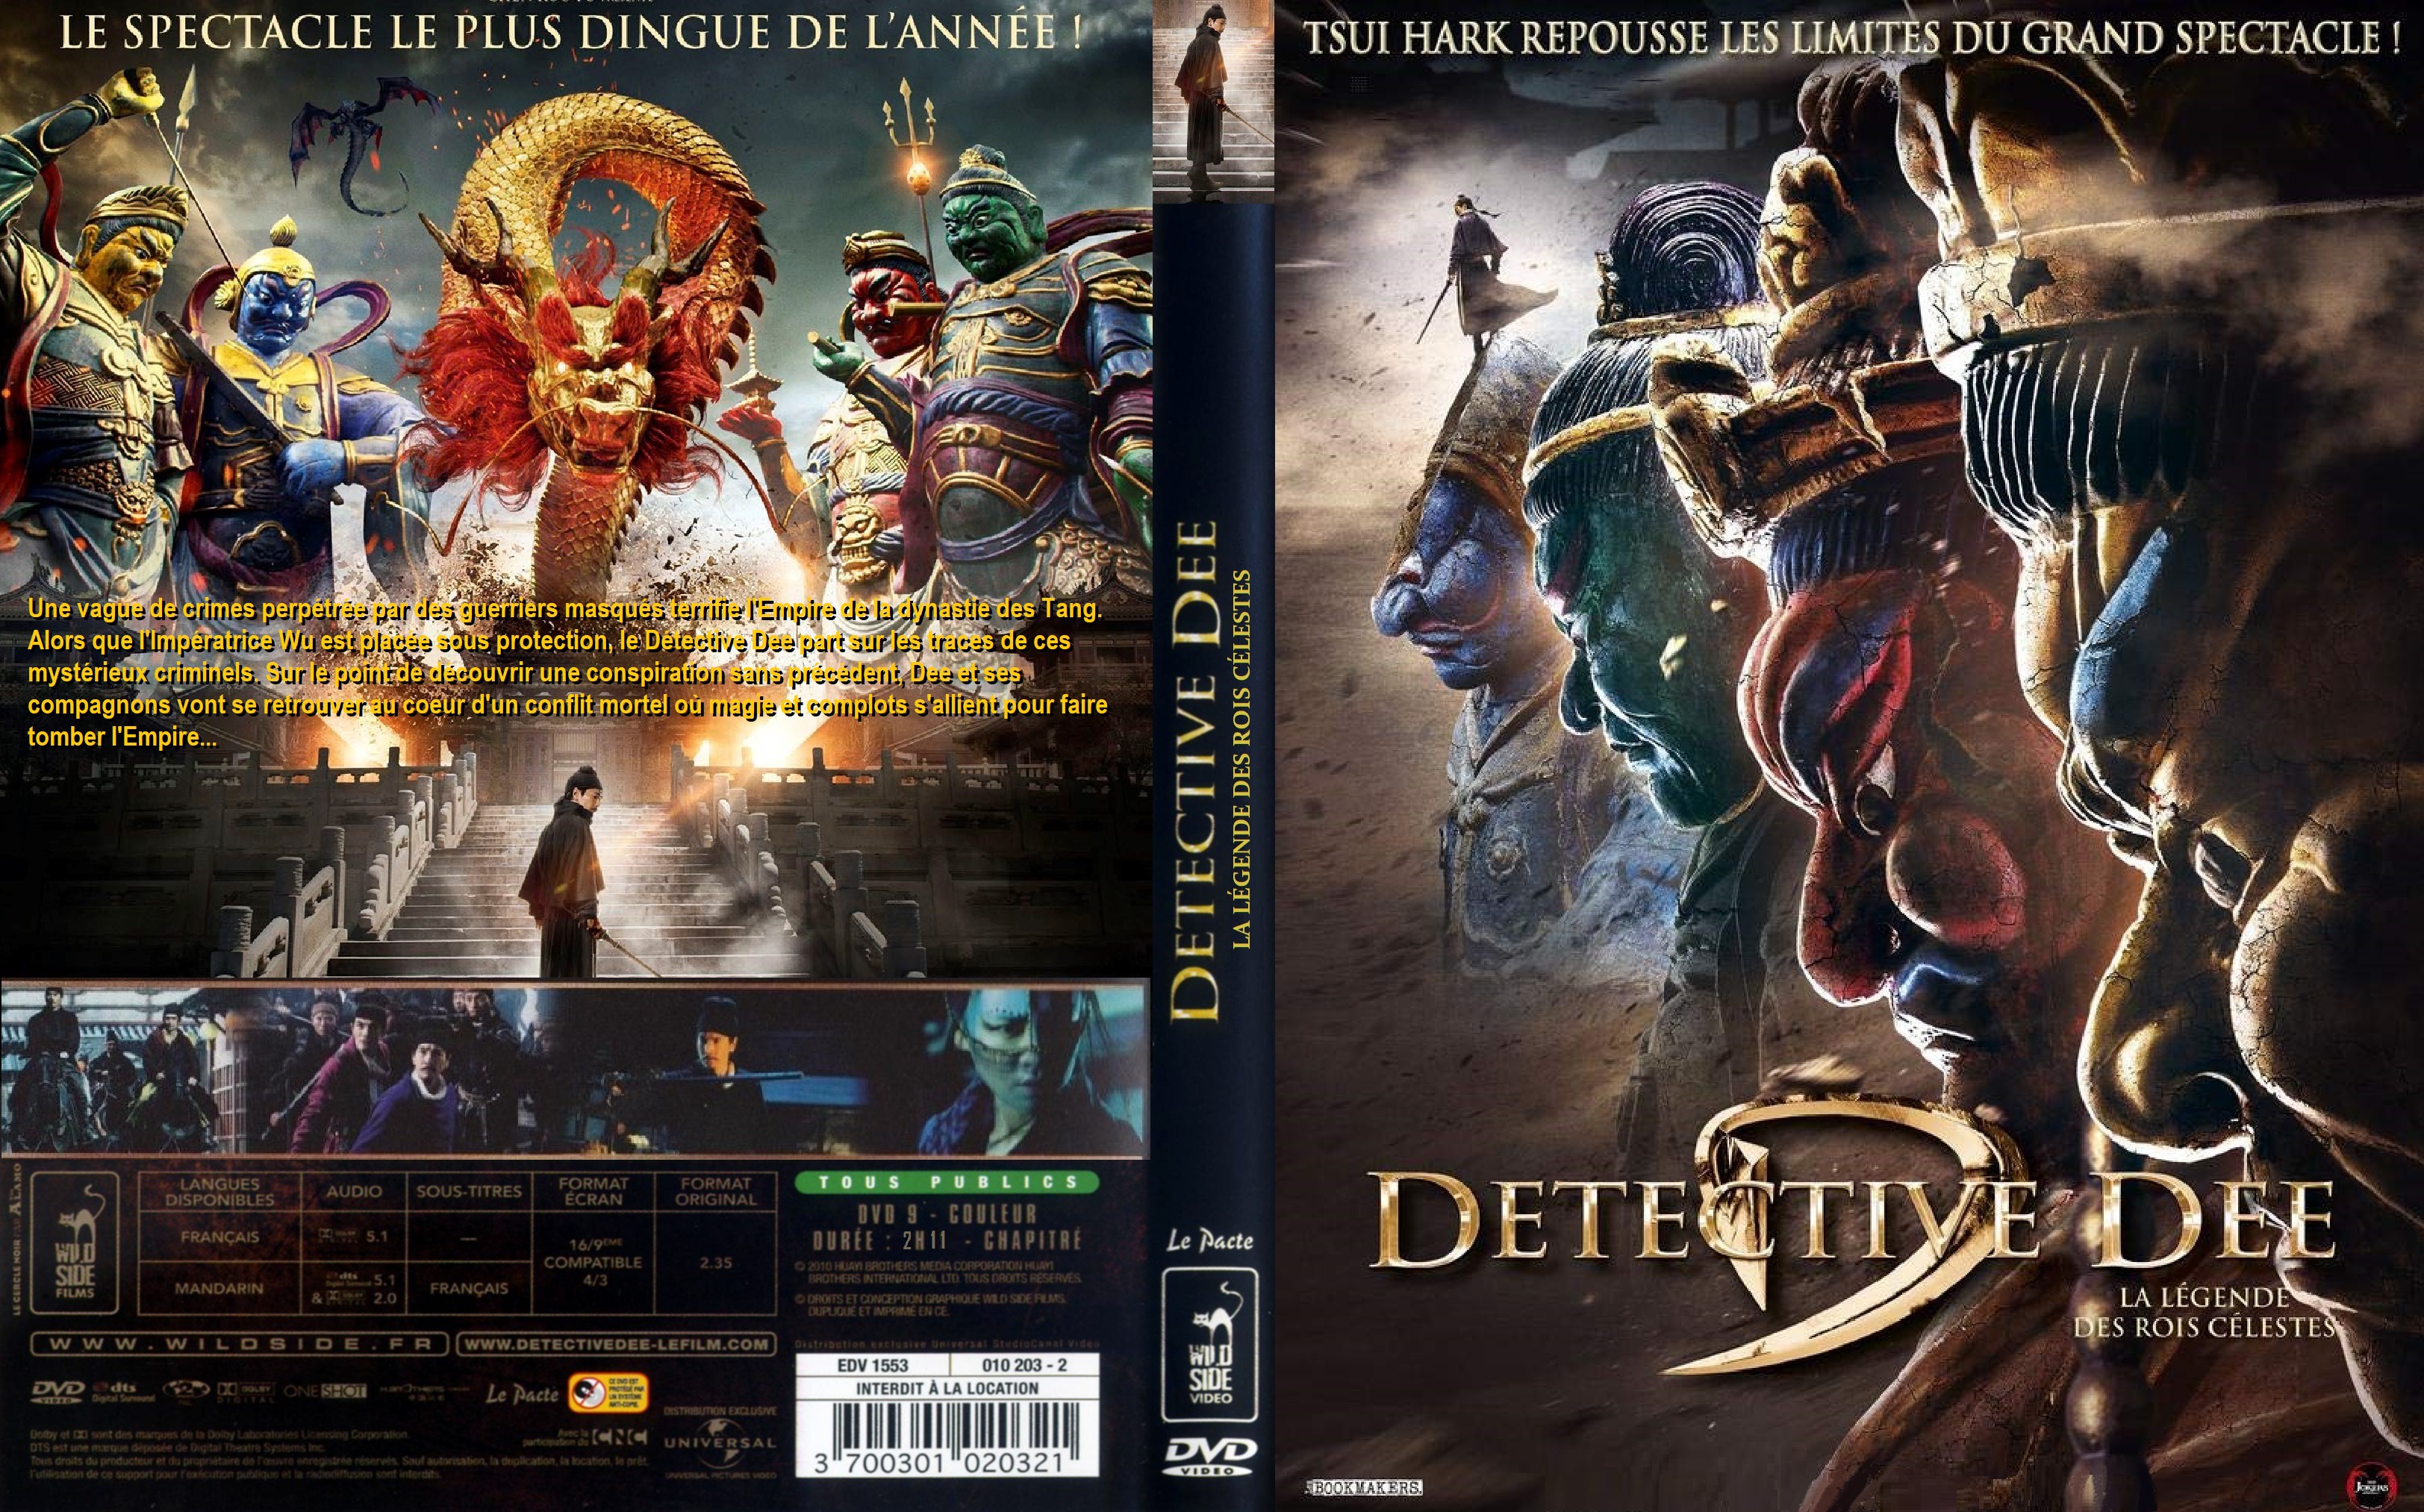 Jaquette DVD Detective Dee La legende des Rois Celestes custom (BLU-RAY)